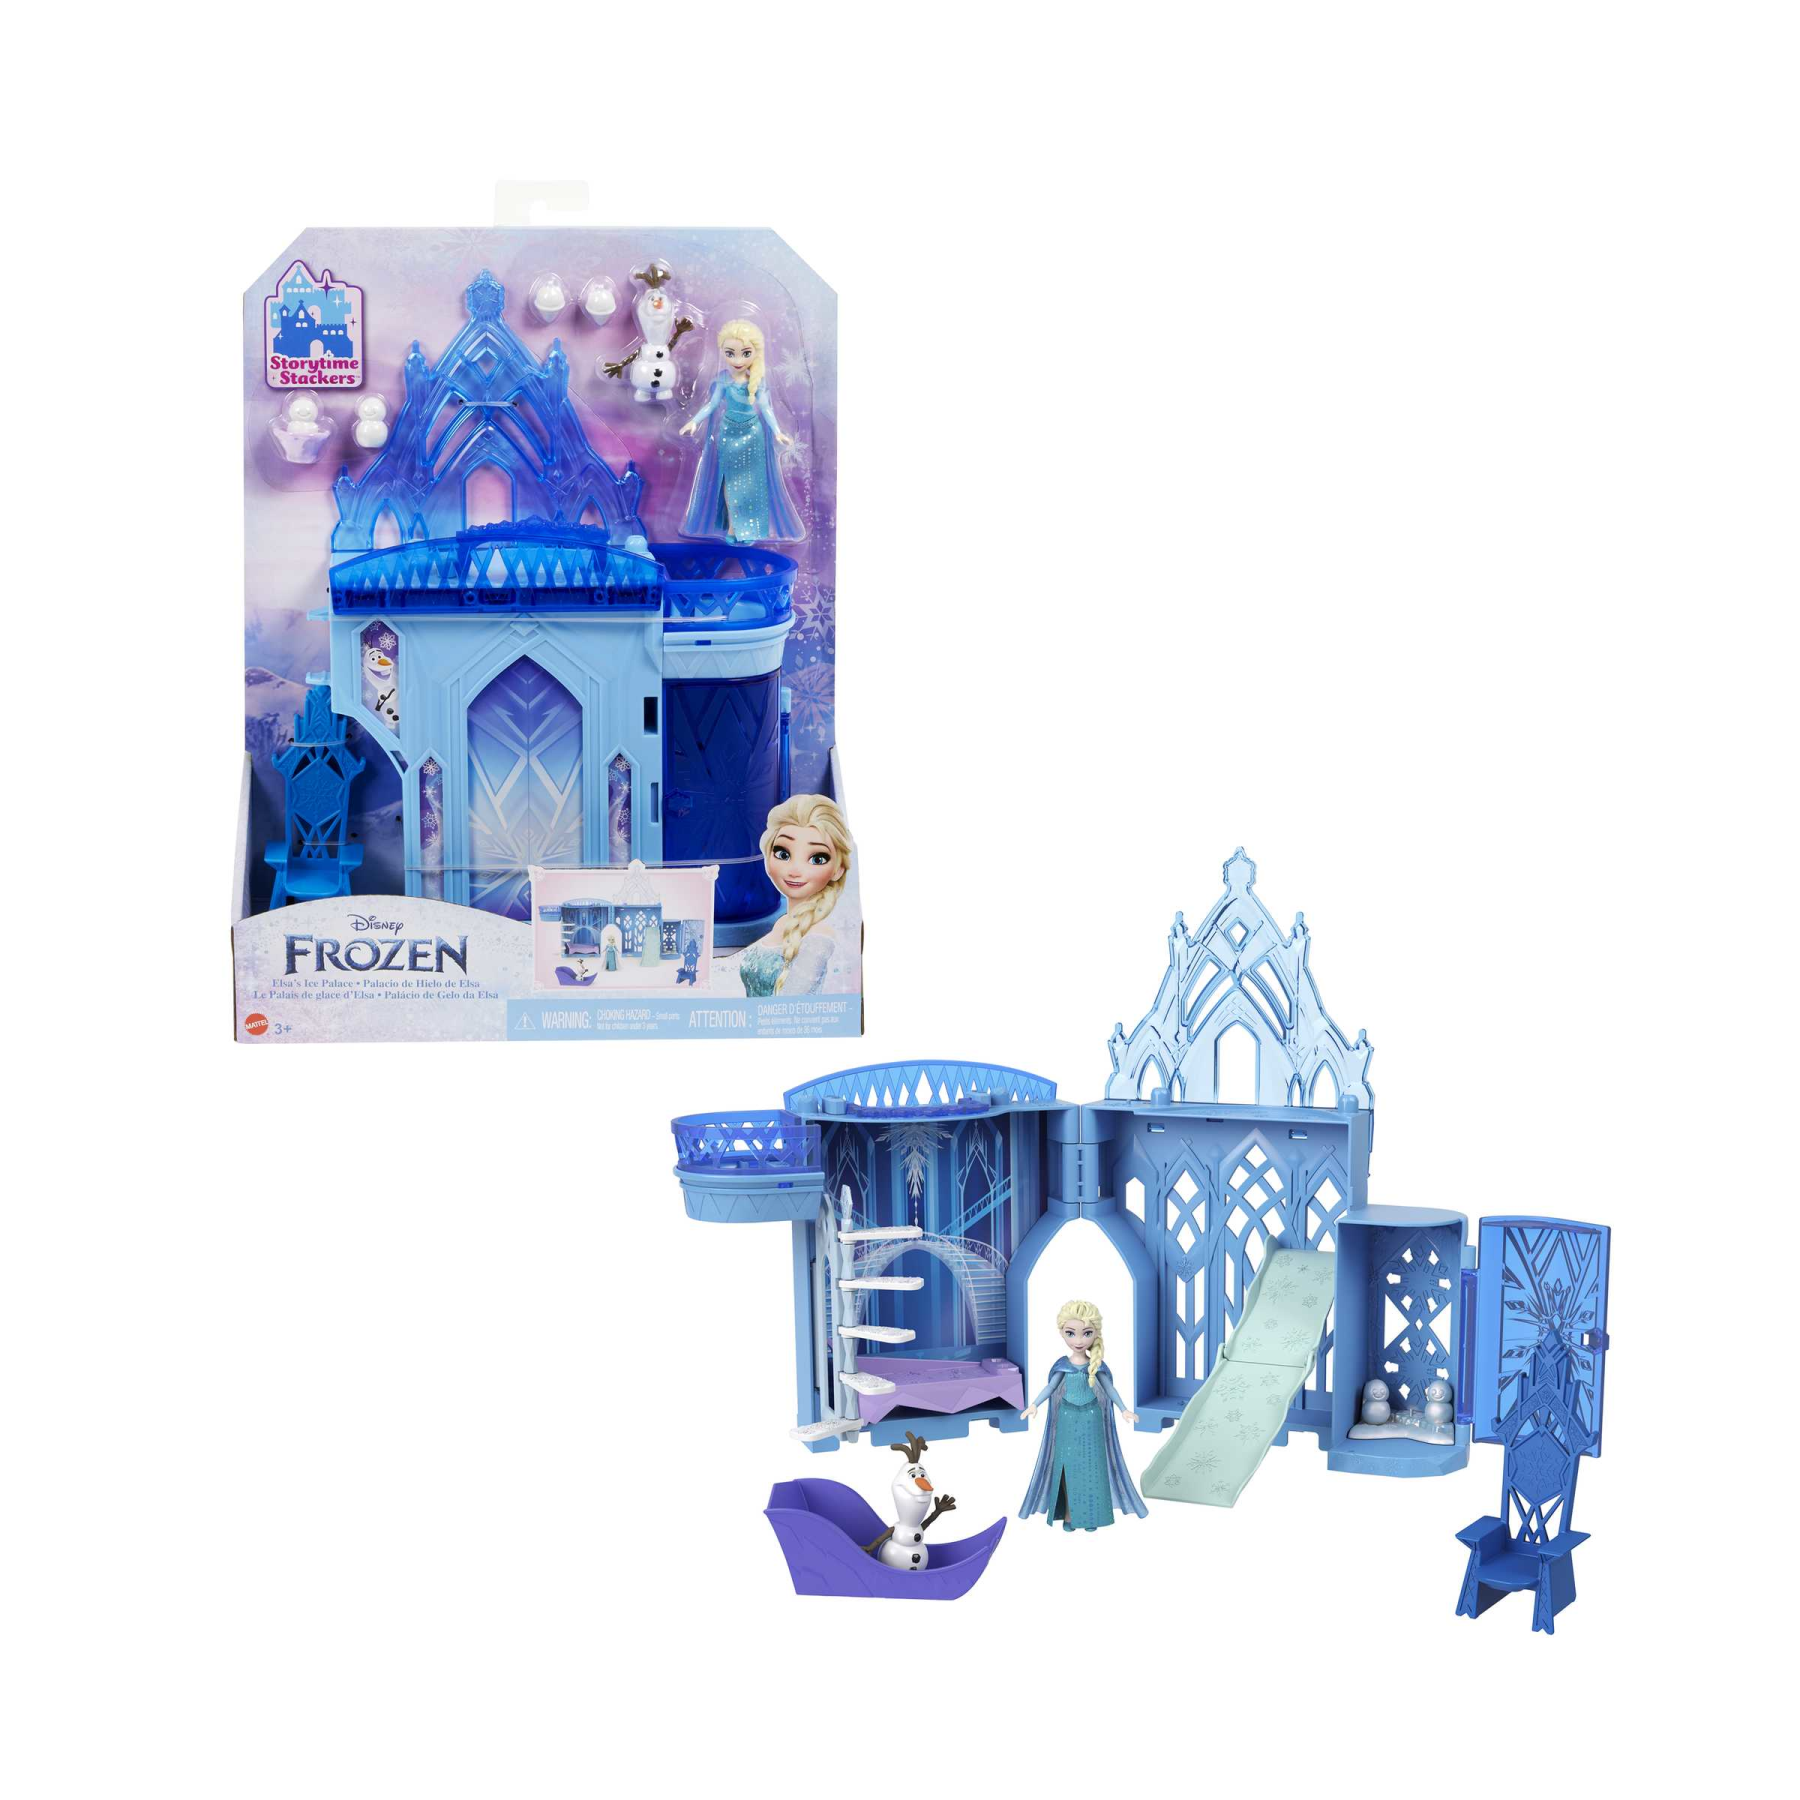 Disney frozen - set componibili palazzo di ghiaccio di elsa, playset castello delle bambole impilabile, con mini bambola elsa, olaf e tanti accessori, giocattolo per bambini, 3+ anni, hlx01 - Frozen